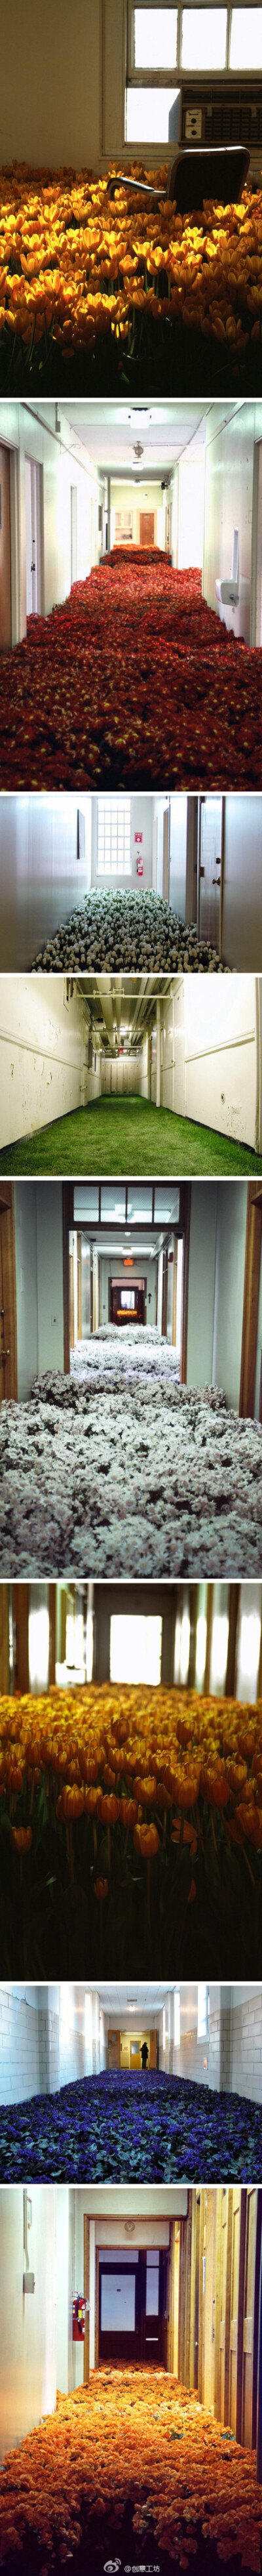 美国女艺术家Anna Schuleit用28000盆盛开的鲜花填满了这座承载了太多希望和悲伤的建筑